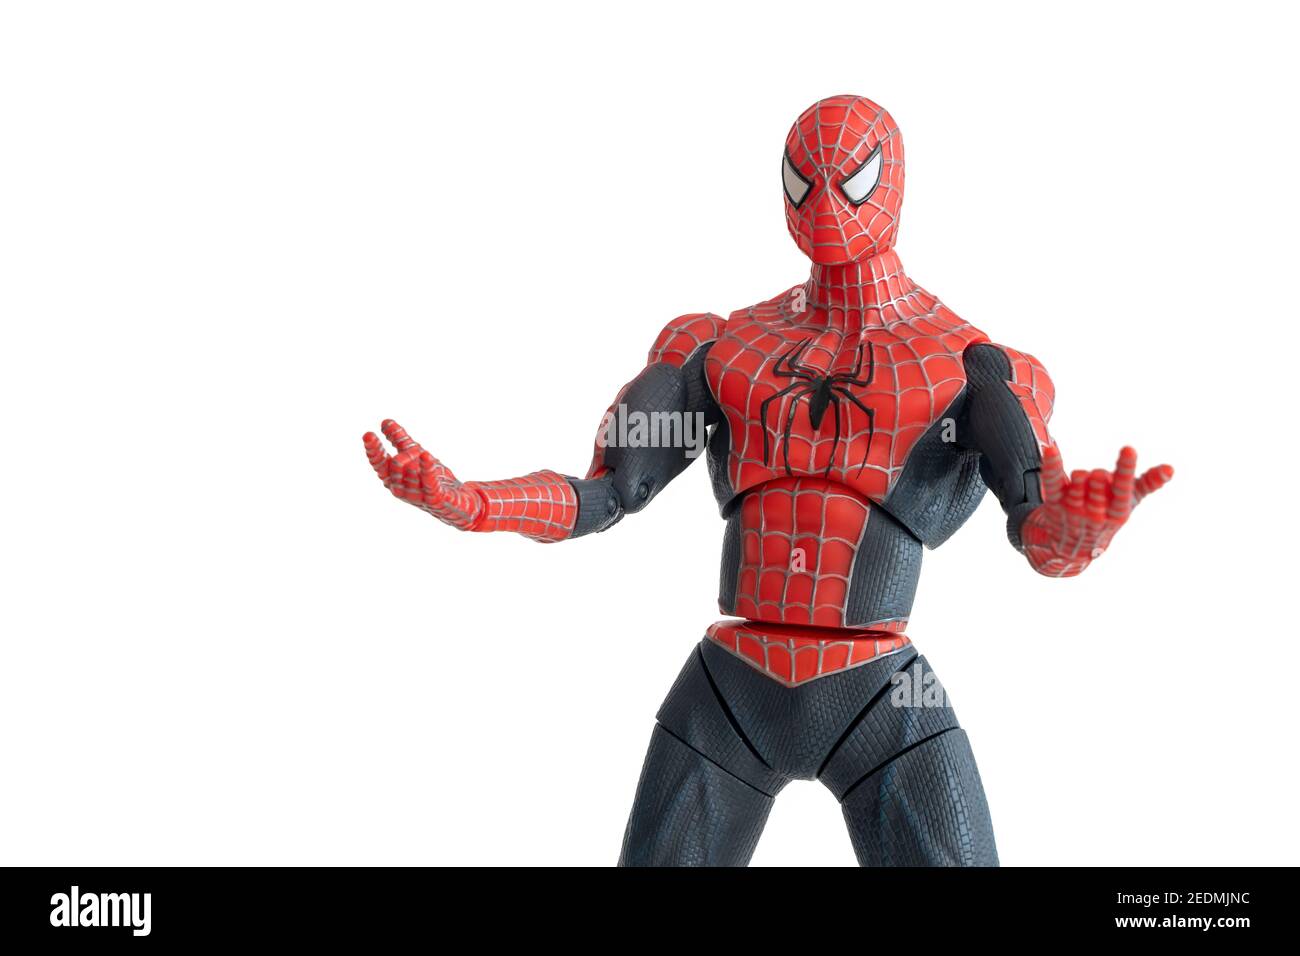 Spiderman toy immagini e fotografie stock ad alta risoluzione - Alamy